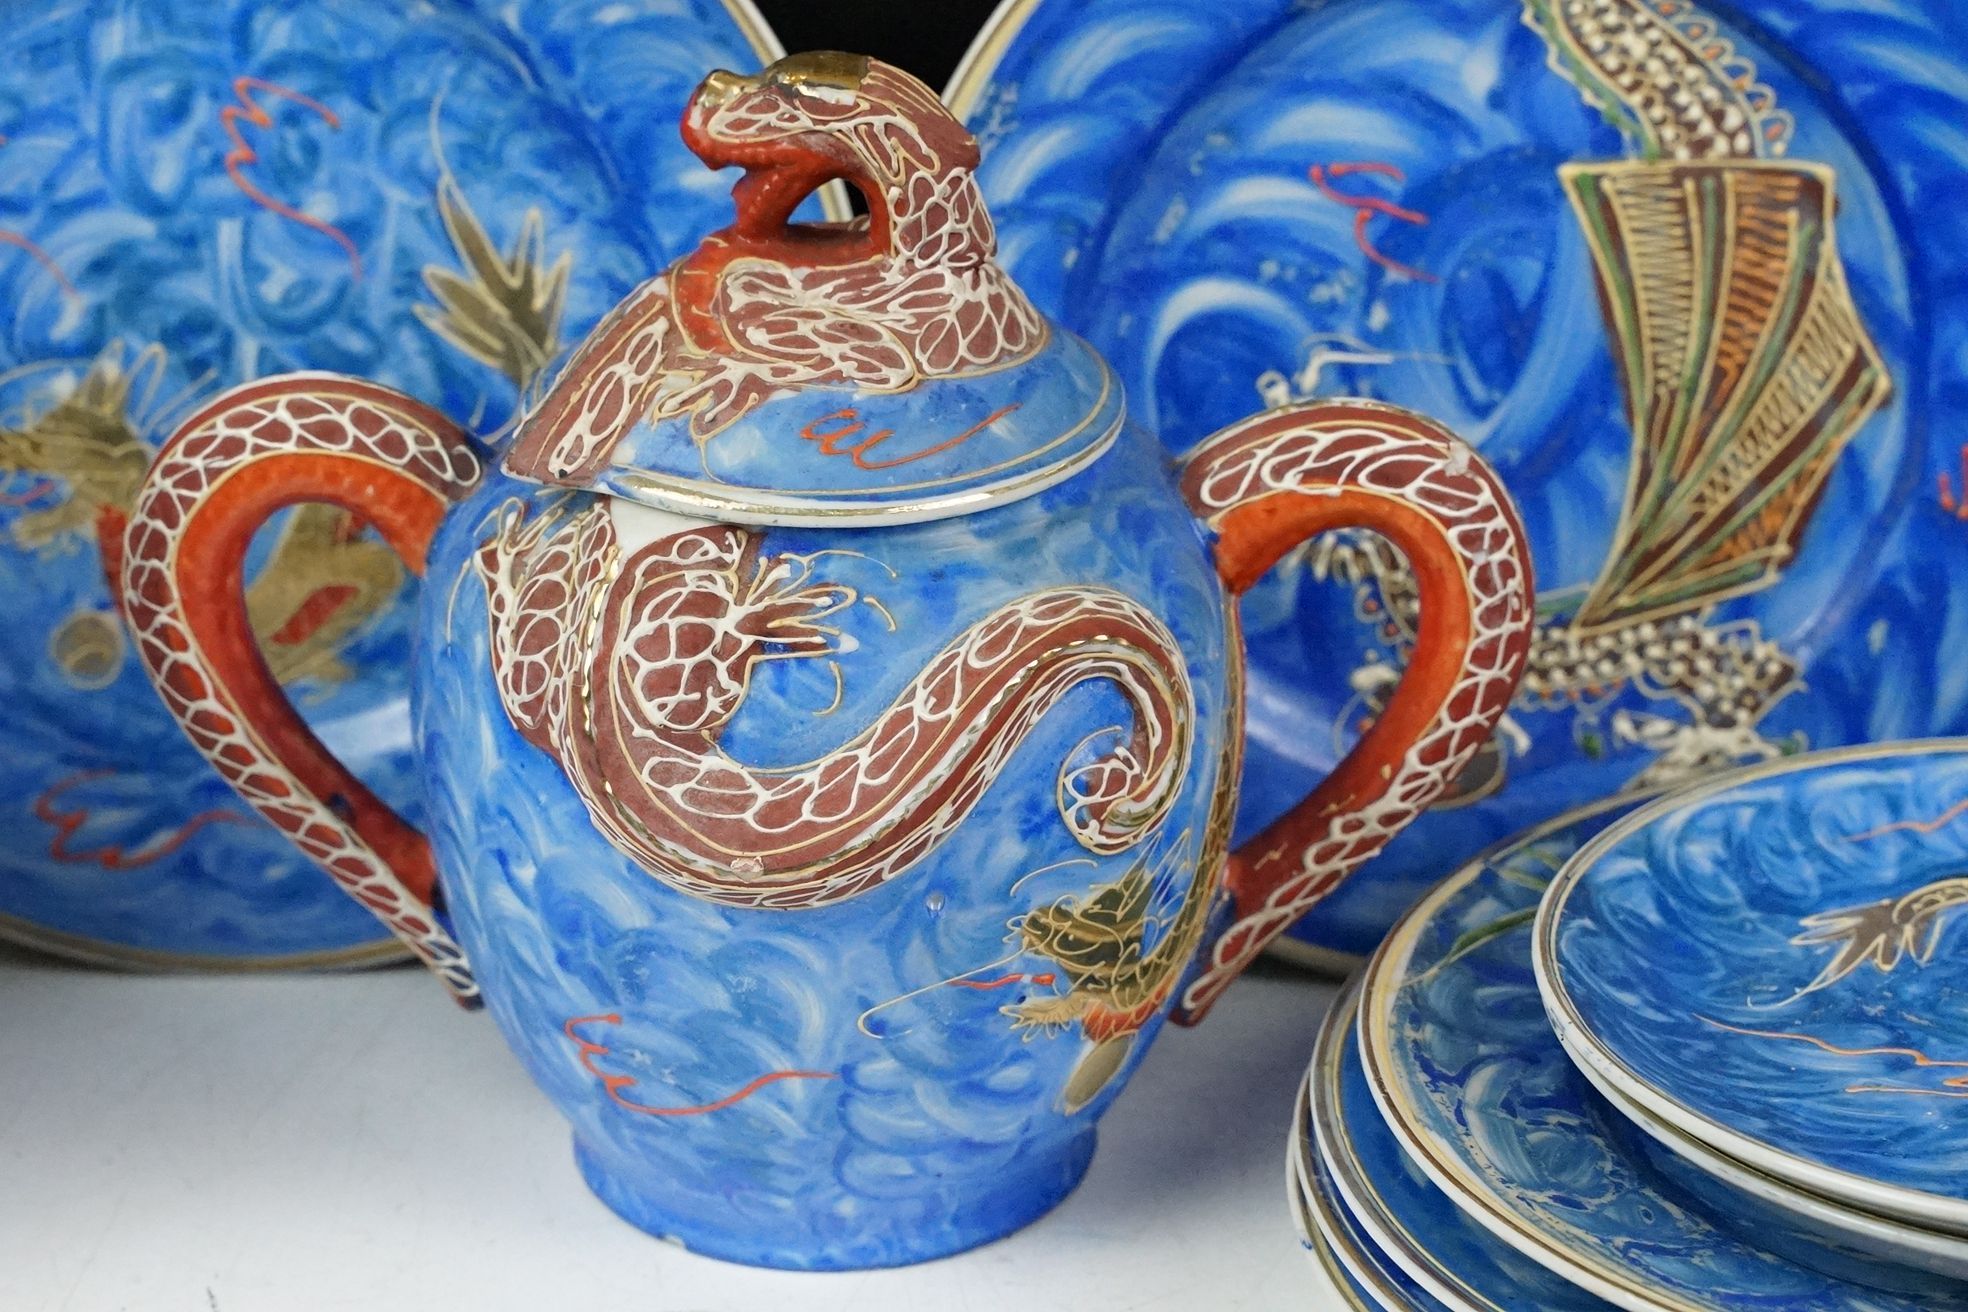 Japanese Kutani porcelain tea set for six with enamelled dragon decoration - Image 6 of 8